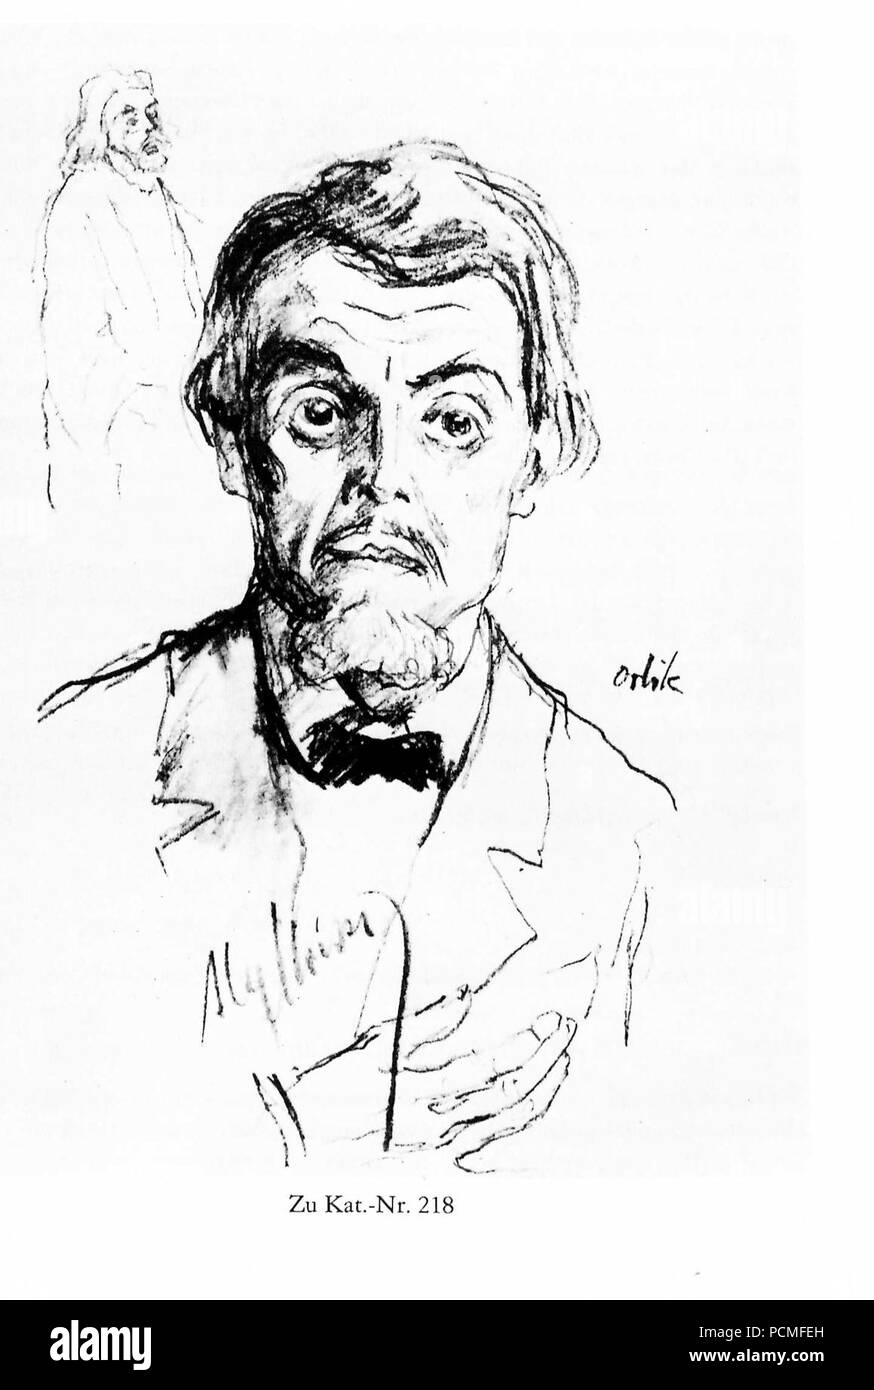 Alexander Moissi - Zeichnung von Emil Orlik 1918. Stock Photo